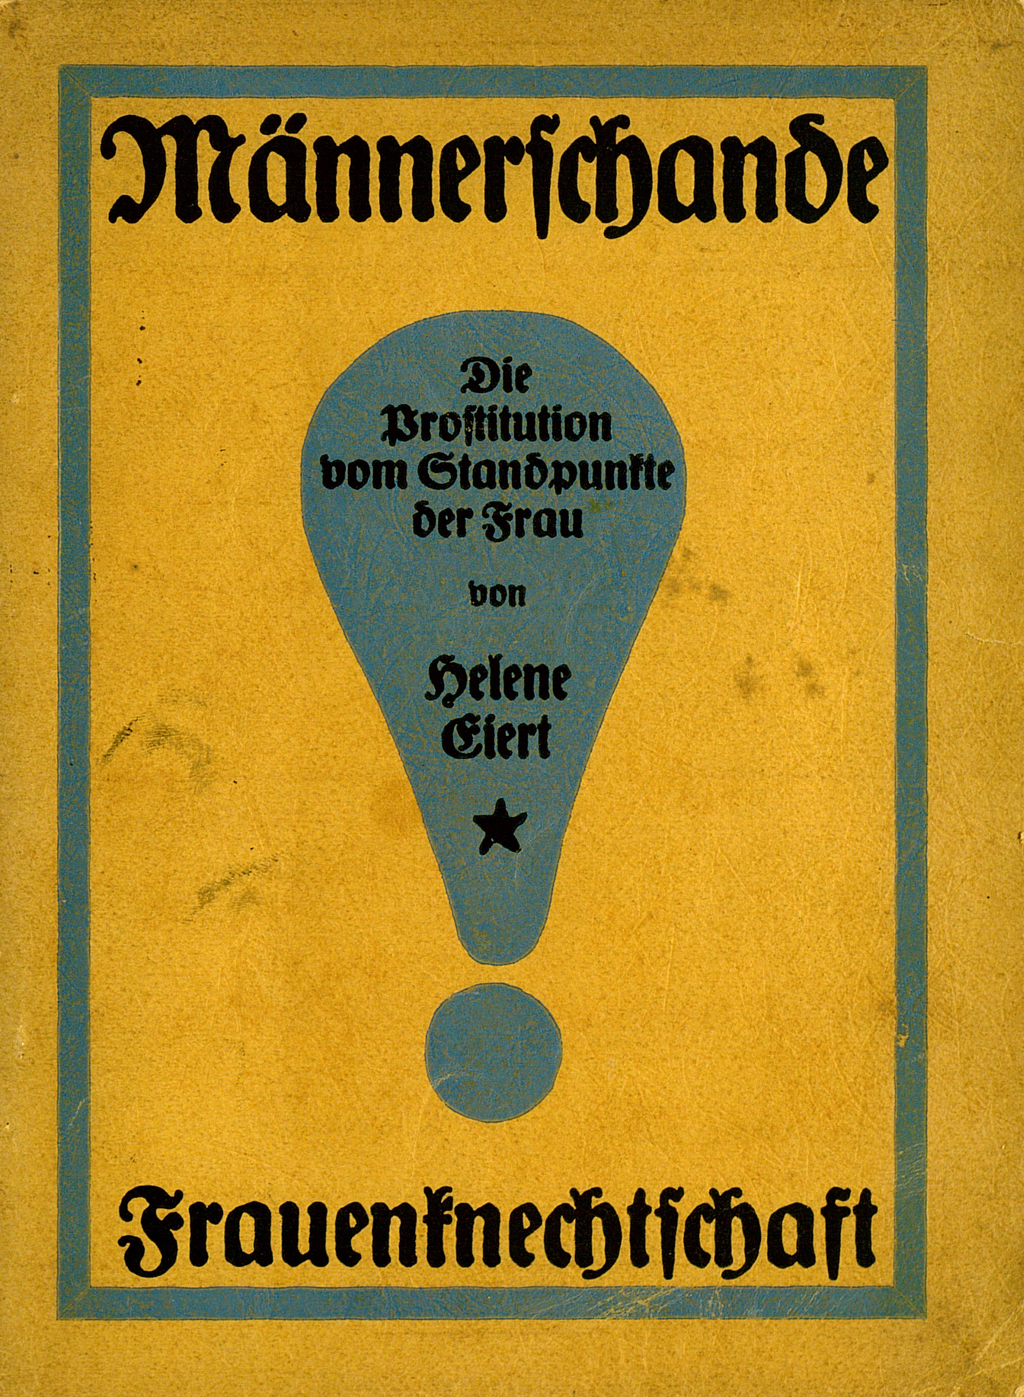 Zu sehen ist die Veröffentlichung: Eiert, Helene: Männerschande – Frauenknechtschaft. Die Prostitution vom Standpunkte der Frau. Ein offenes Wort an die Männer. Graz: Volksheil, 1918.